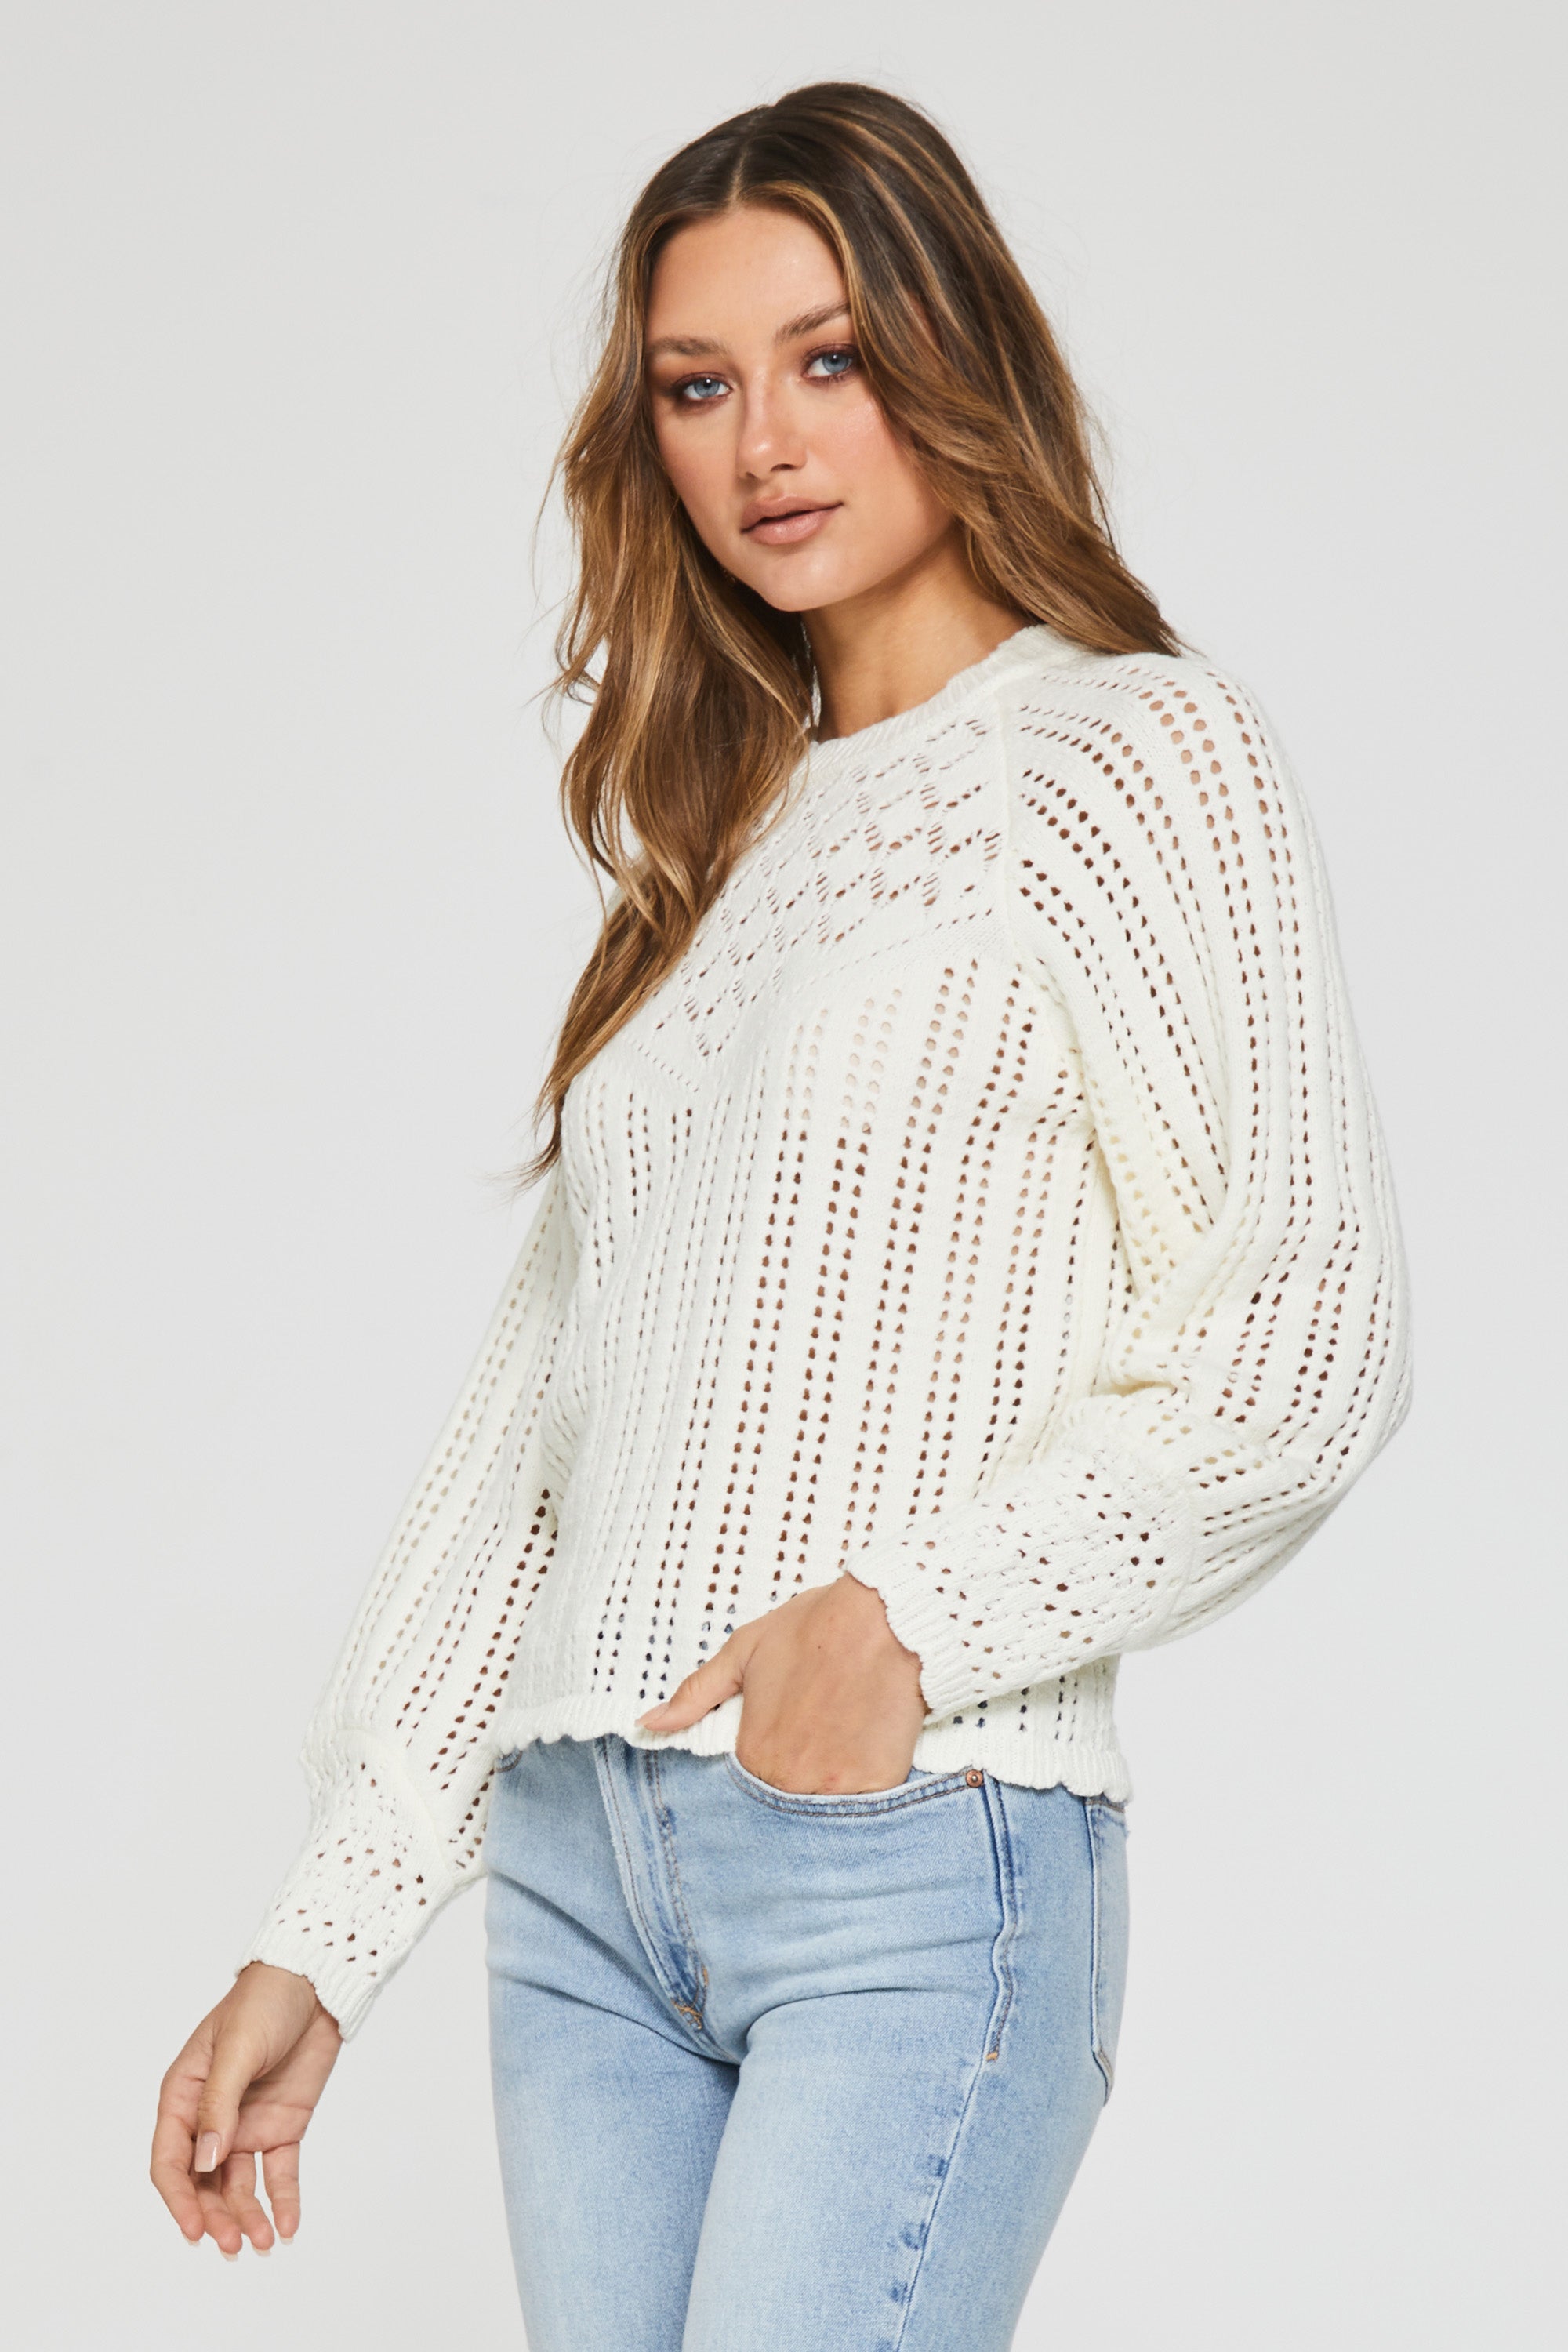 charlene-crochet-sweater-procelain-full-image-another-love-clothing